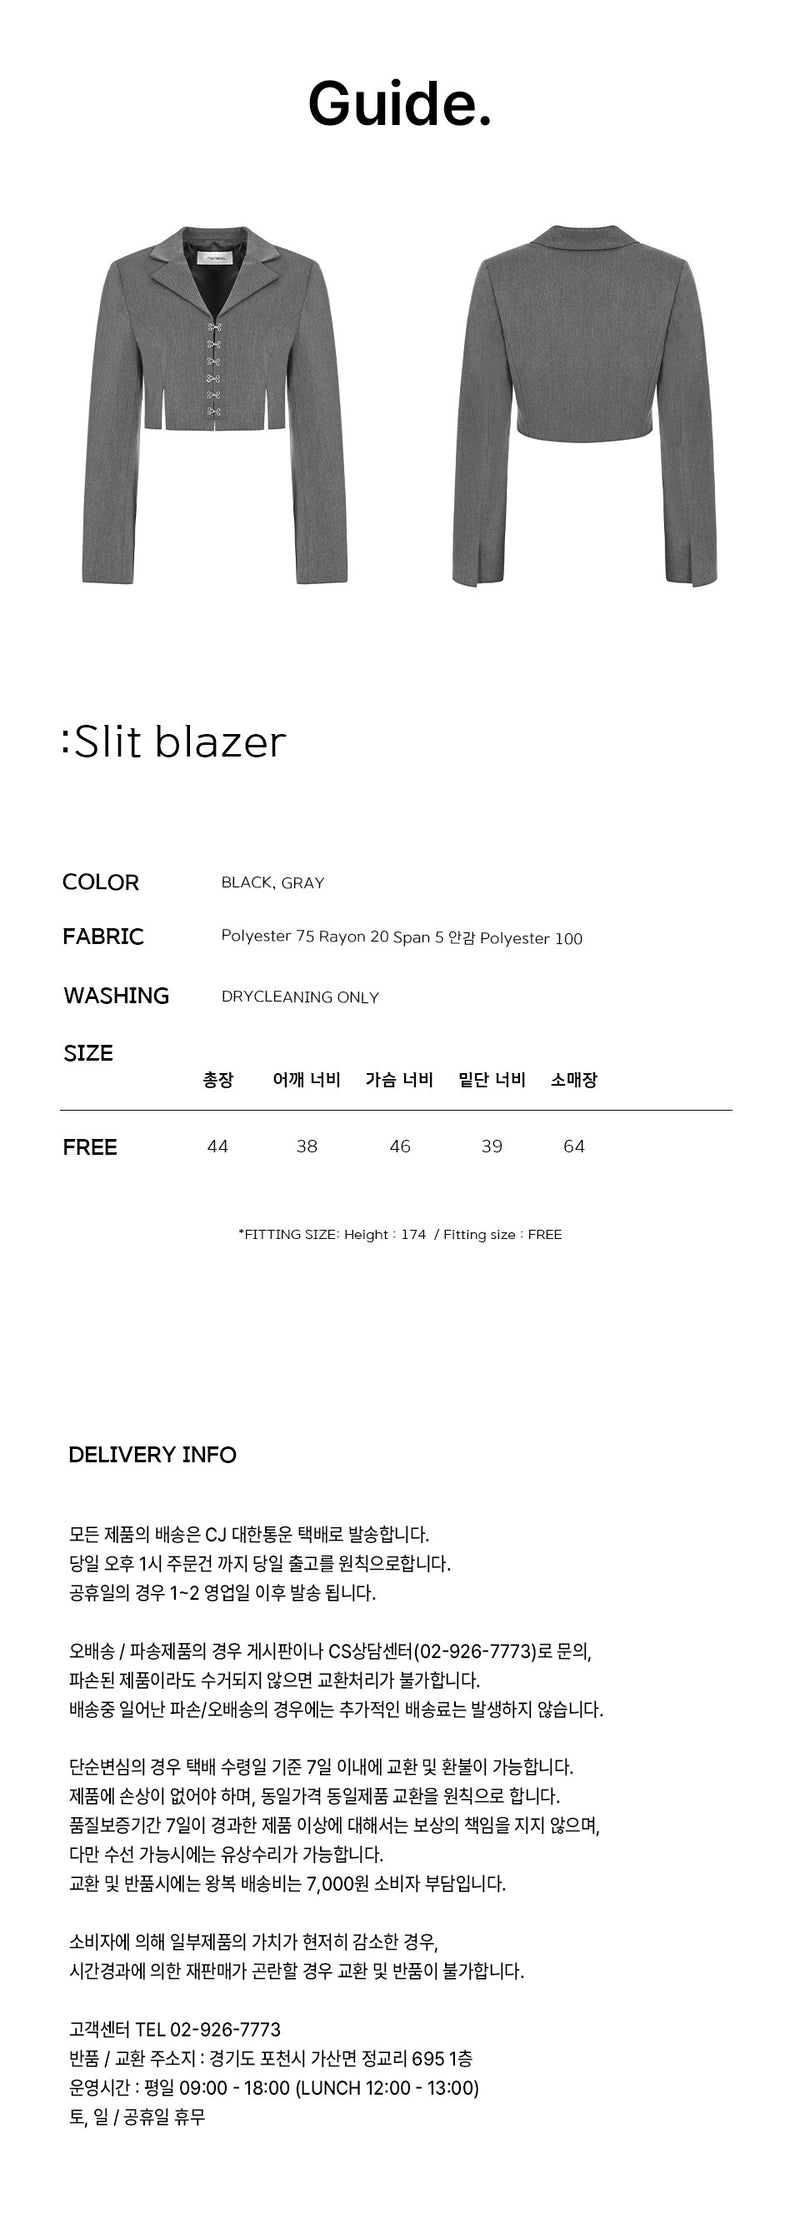 スリットブレザー / Slit blazer